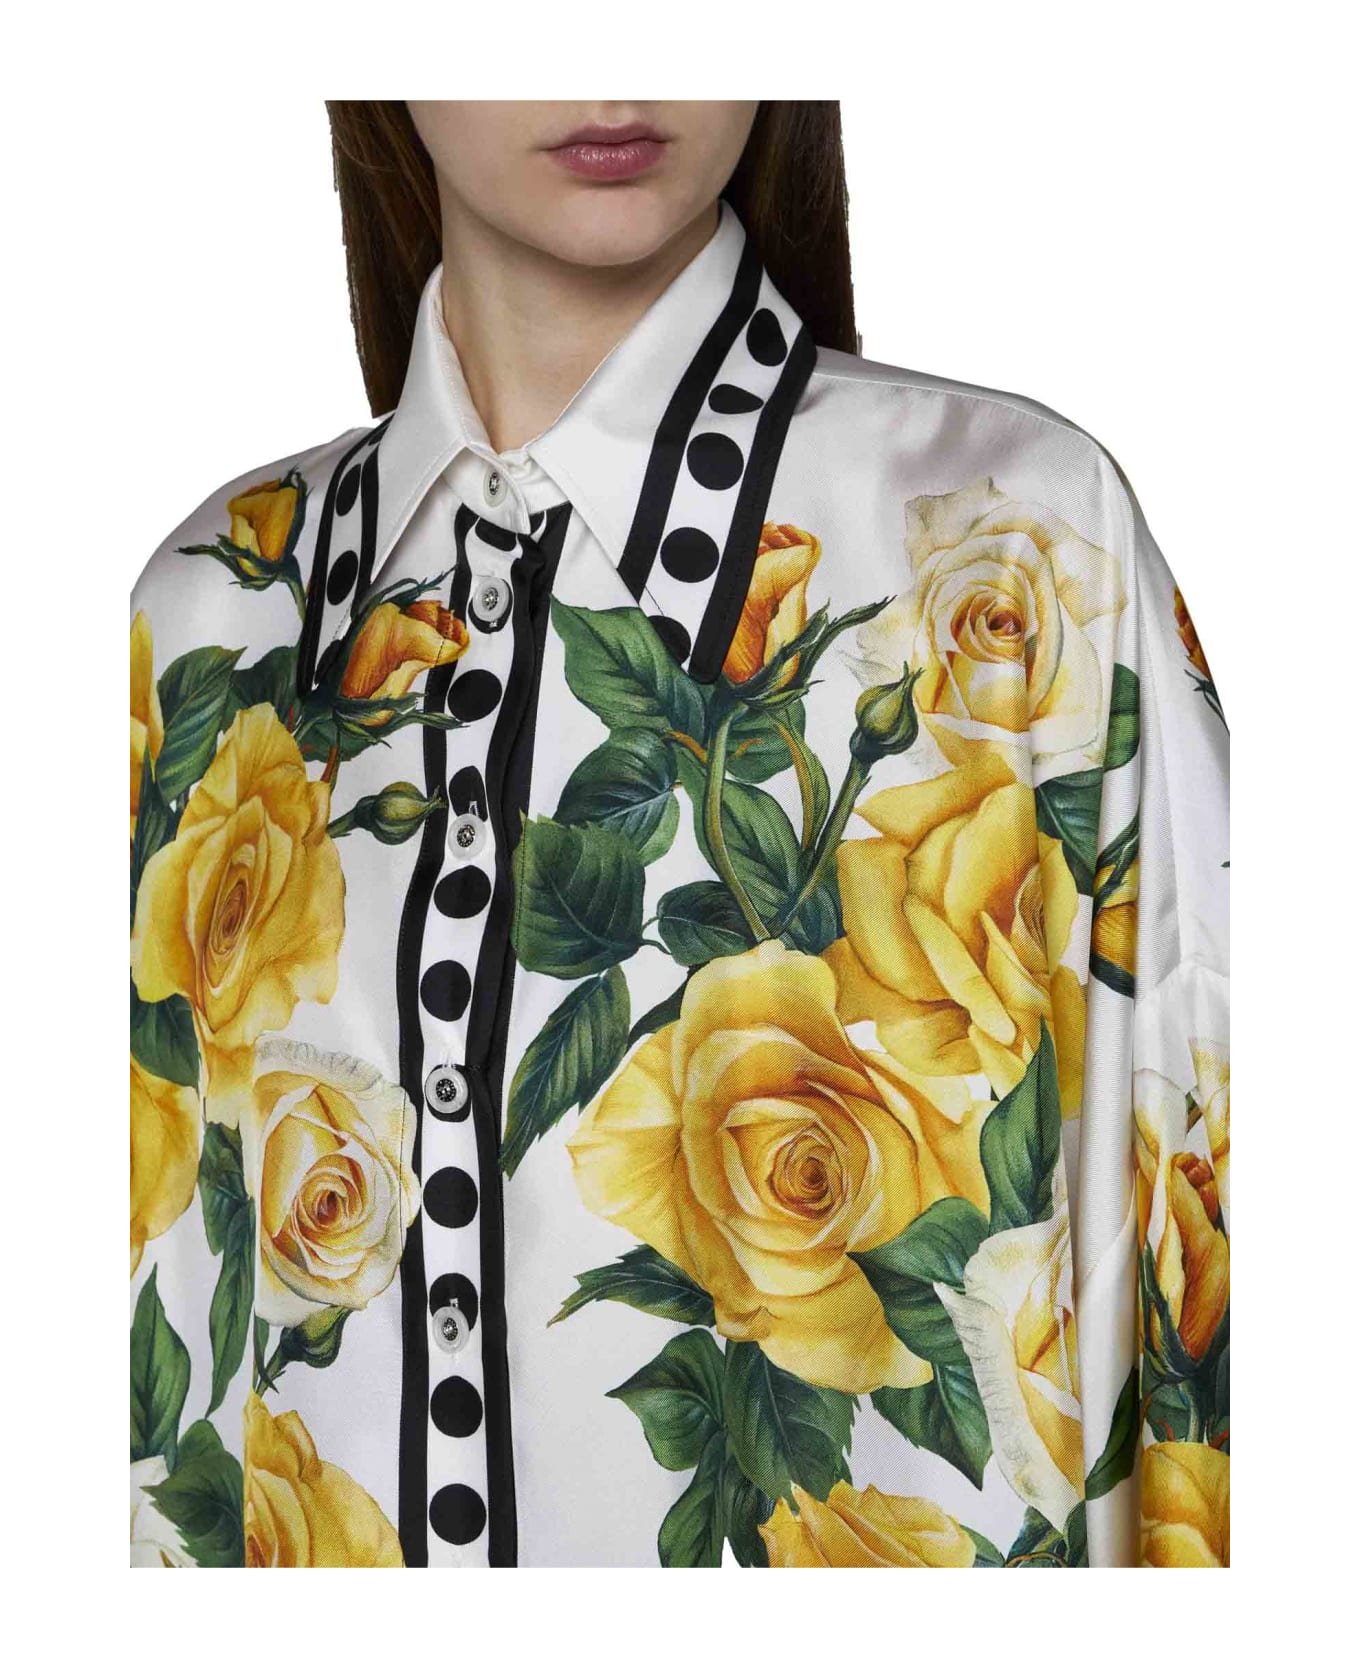 Dolce & Gabbana Shirt - Rose gialle fdo bco